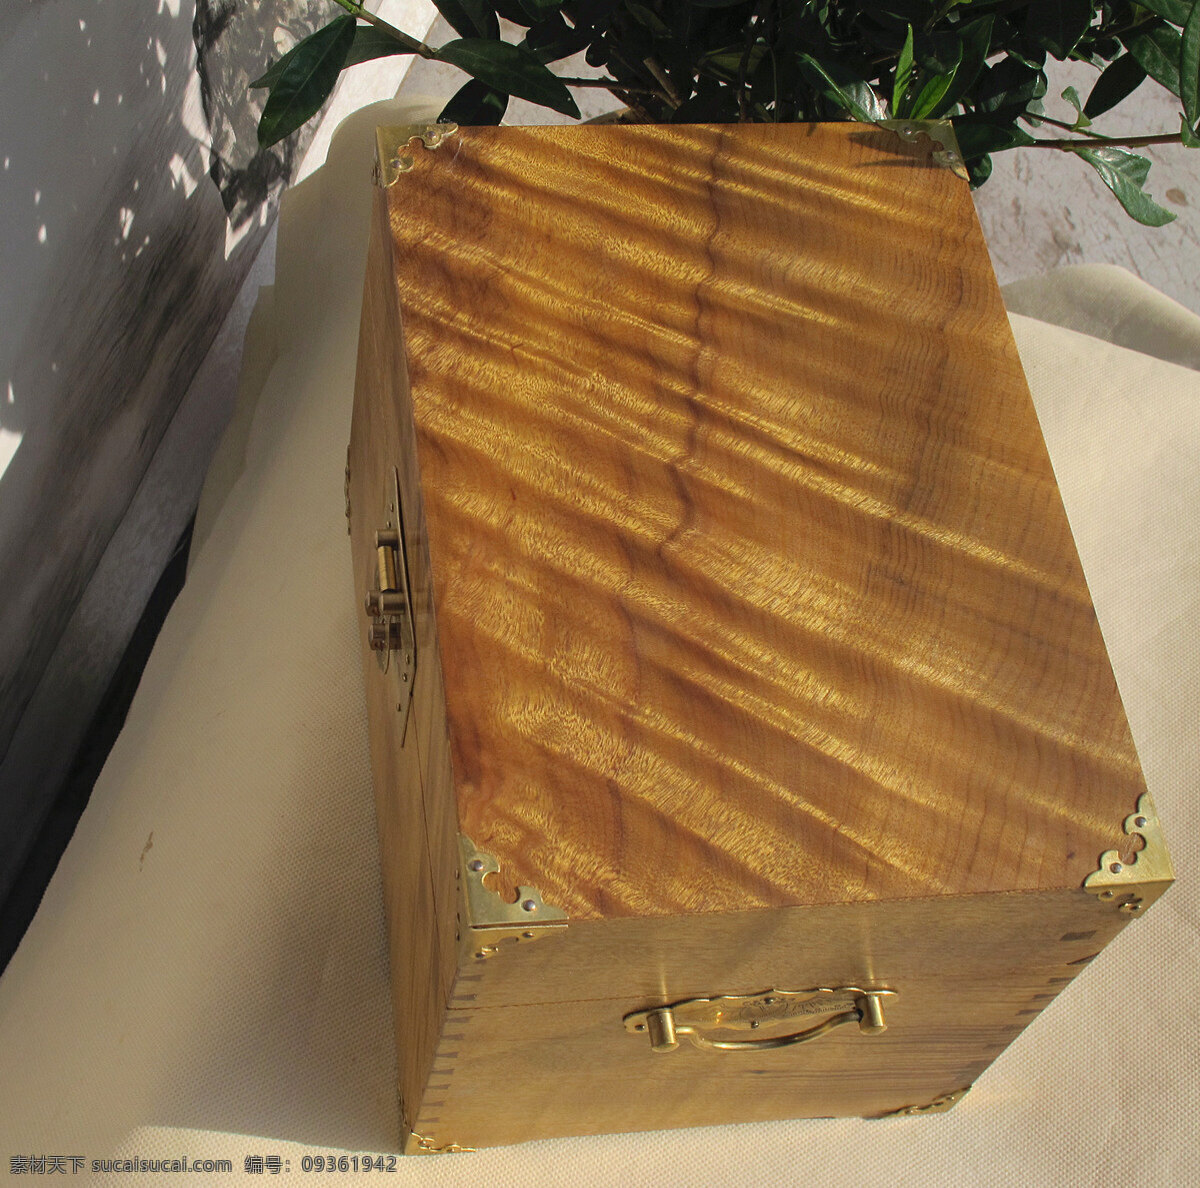 金丝楠木箱子 中国 清代 文房 金丝楠木 箱子 传统文化 文化艺术